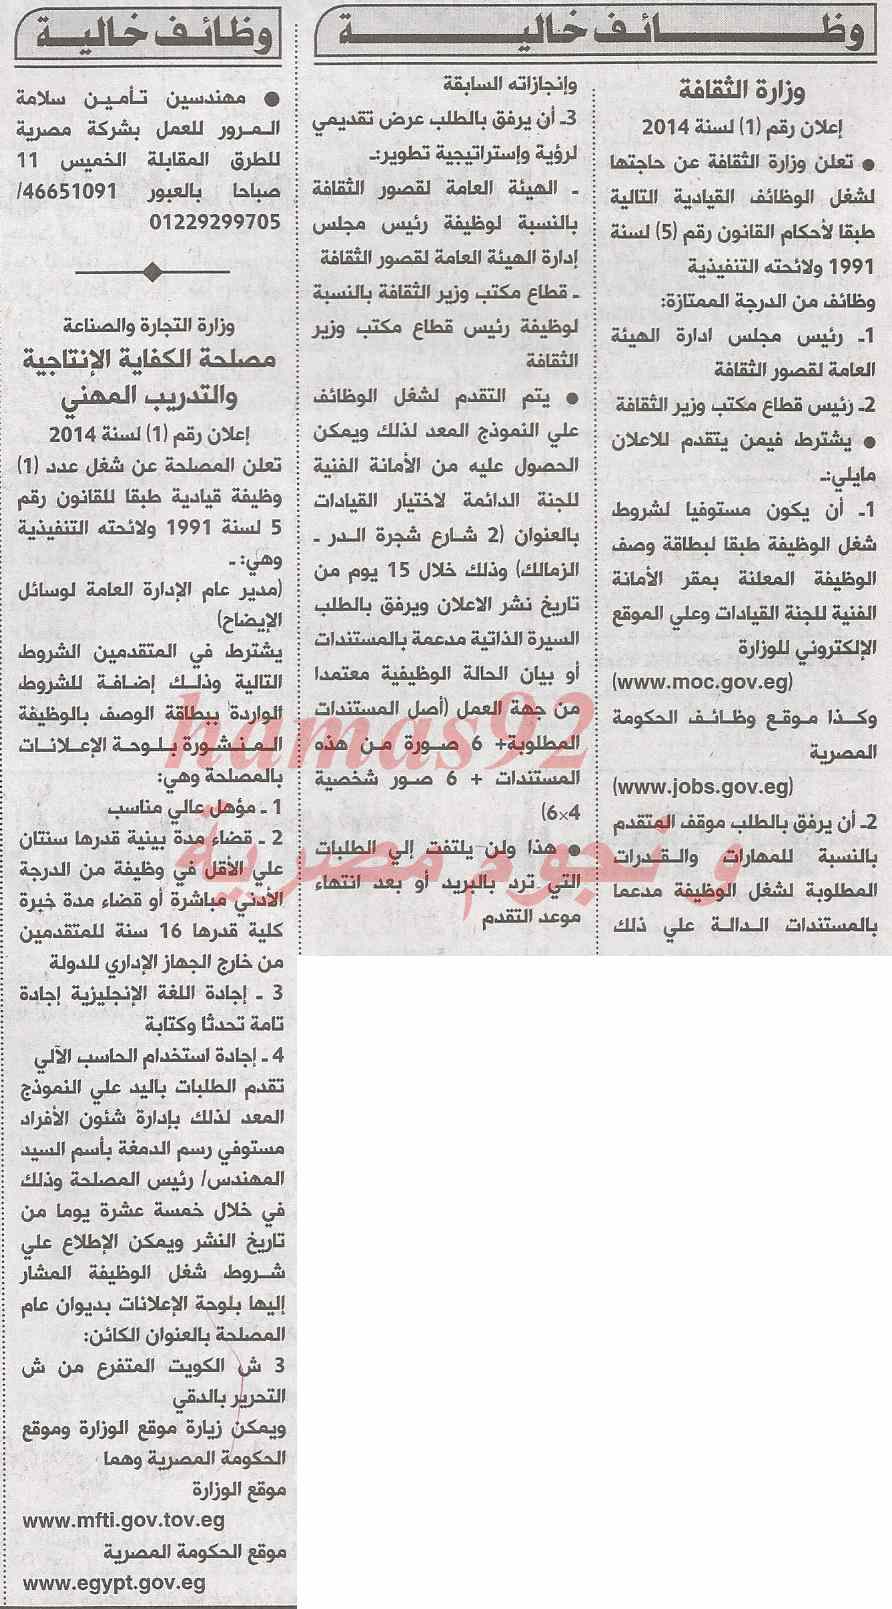 وظائف جريدة الاهرام اليوم الخميس 20-2-2014 , وظائف خالية اليوم 20 فبراير 2014